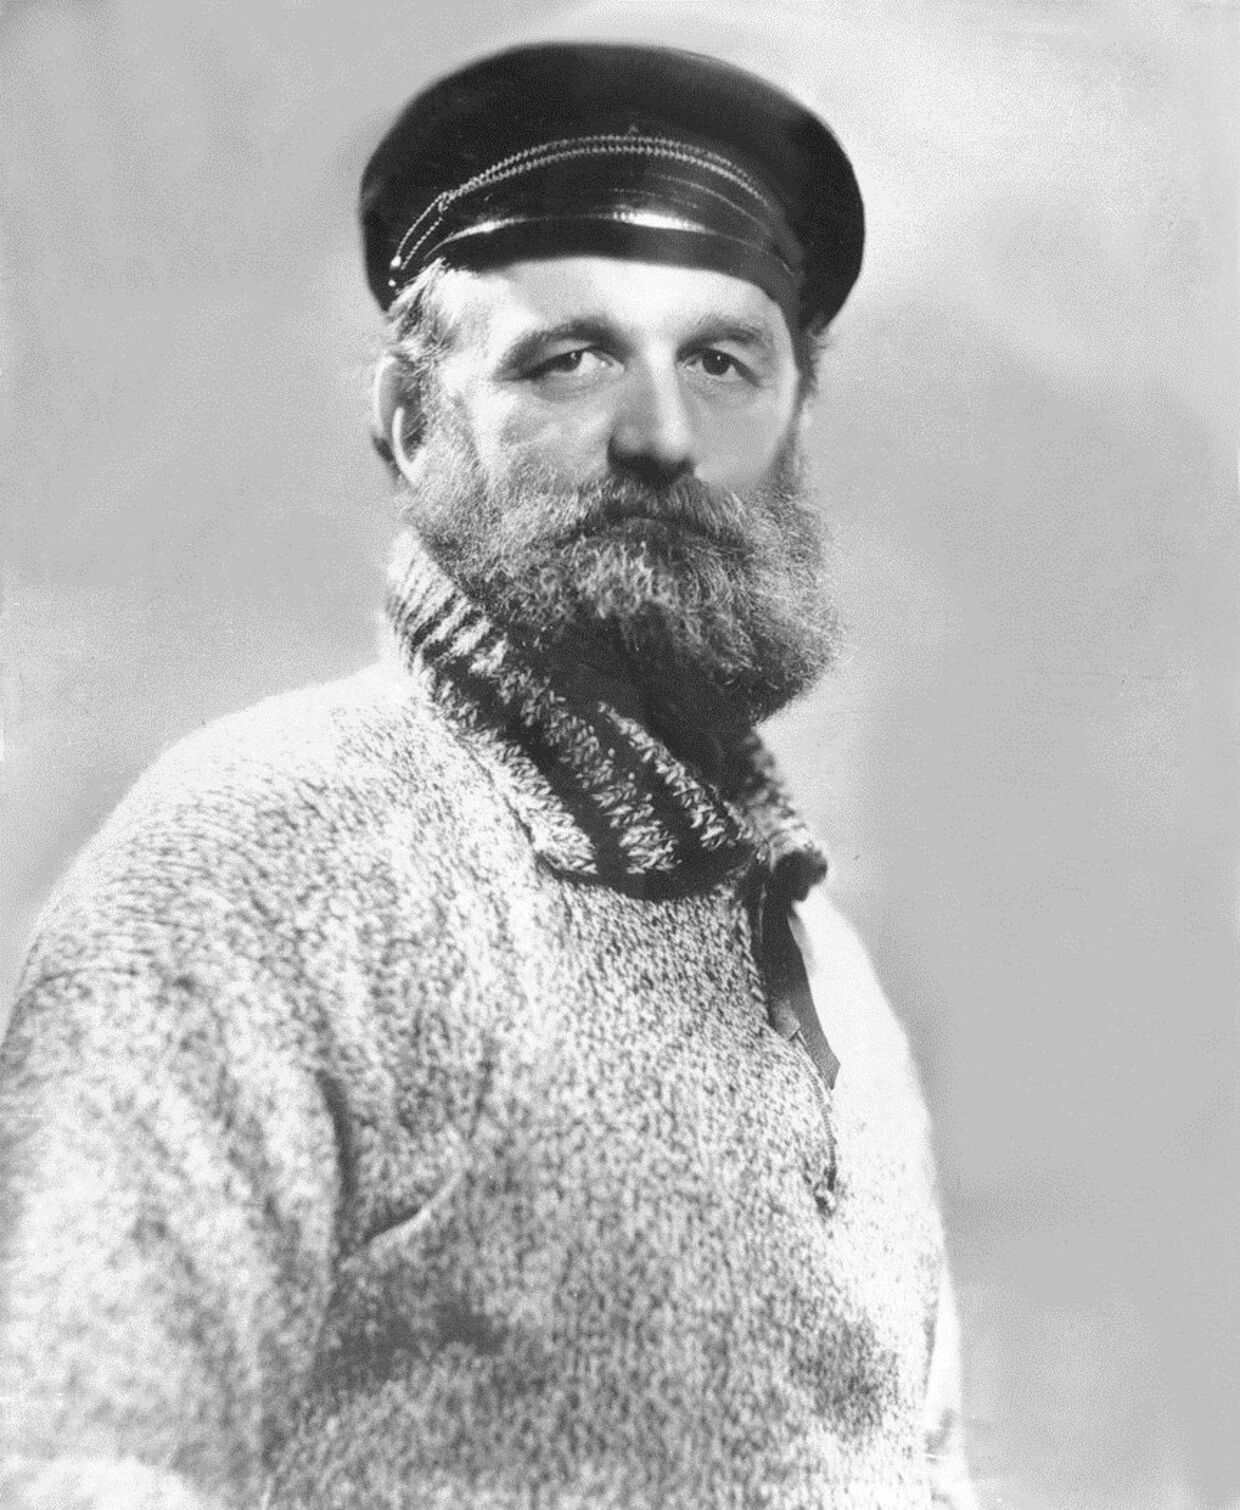 Polarforskeren Peter Freuchen var en personlig mangeårig ved af Carl Mogensen. De var begge med til at stifte flere foreninger bl.a. Dansk Professionelt Bokseforbund og Eventyrernes Klub.